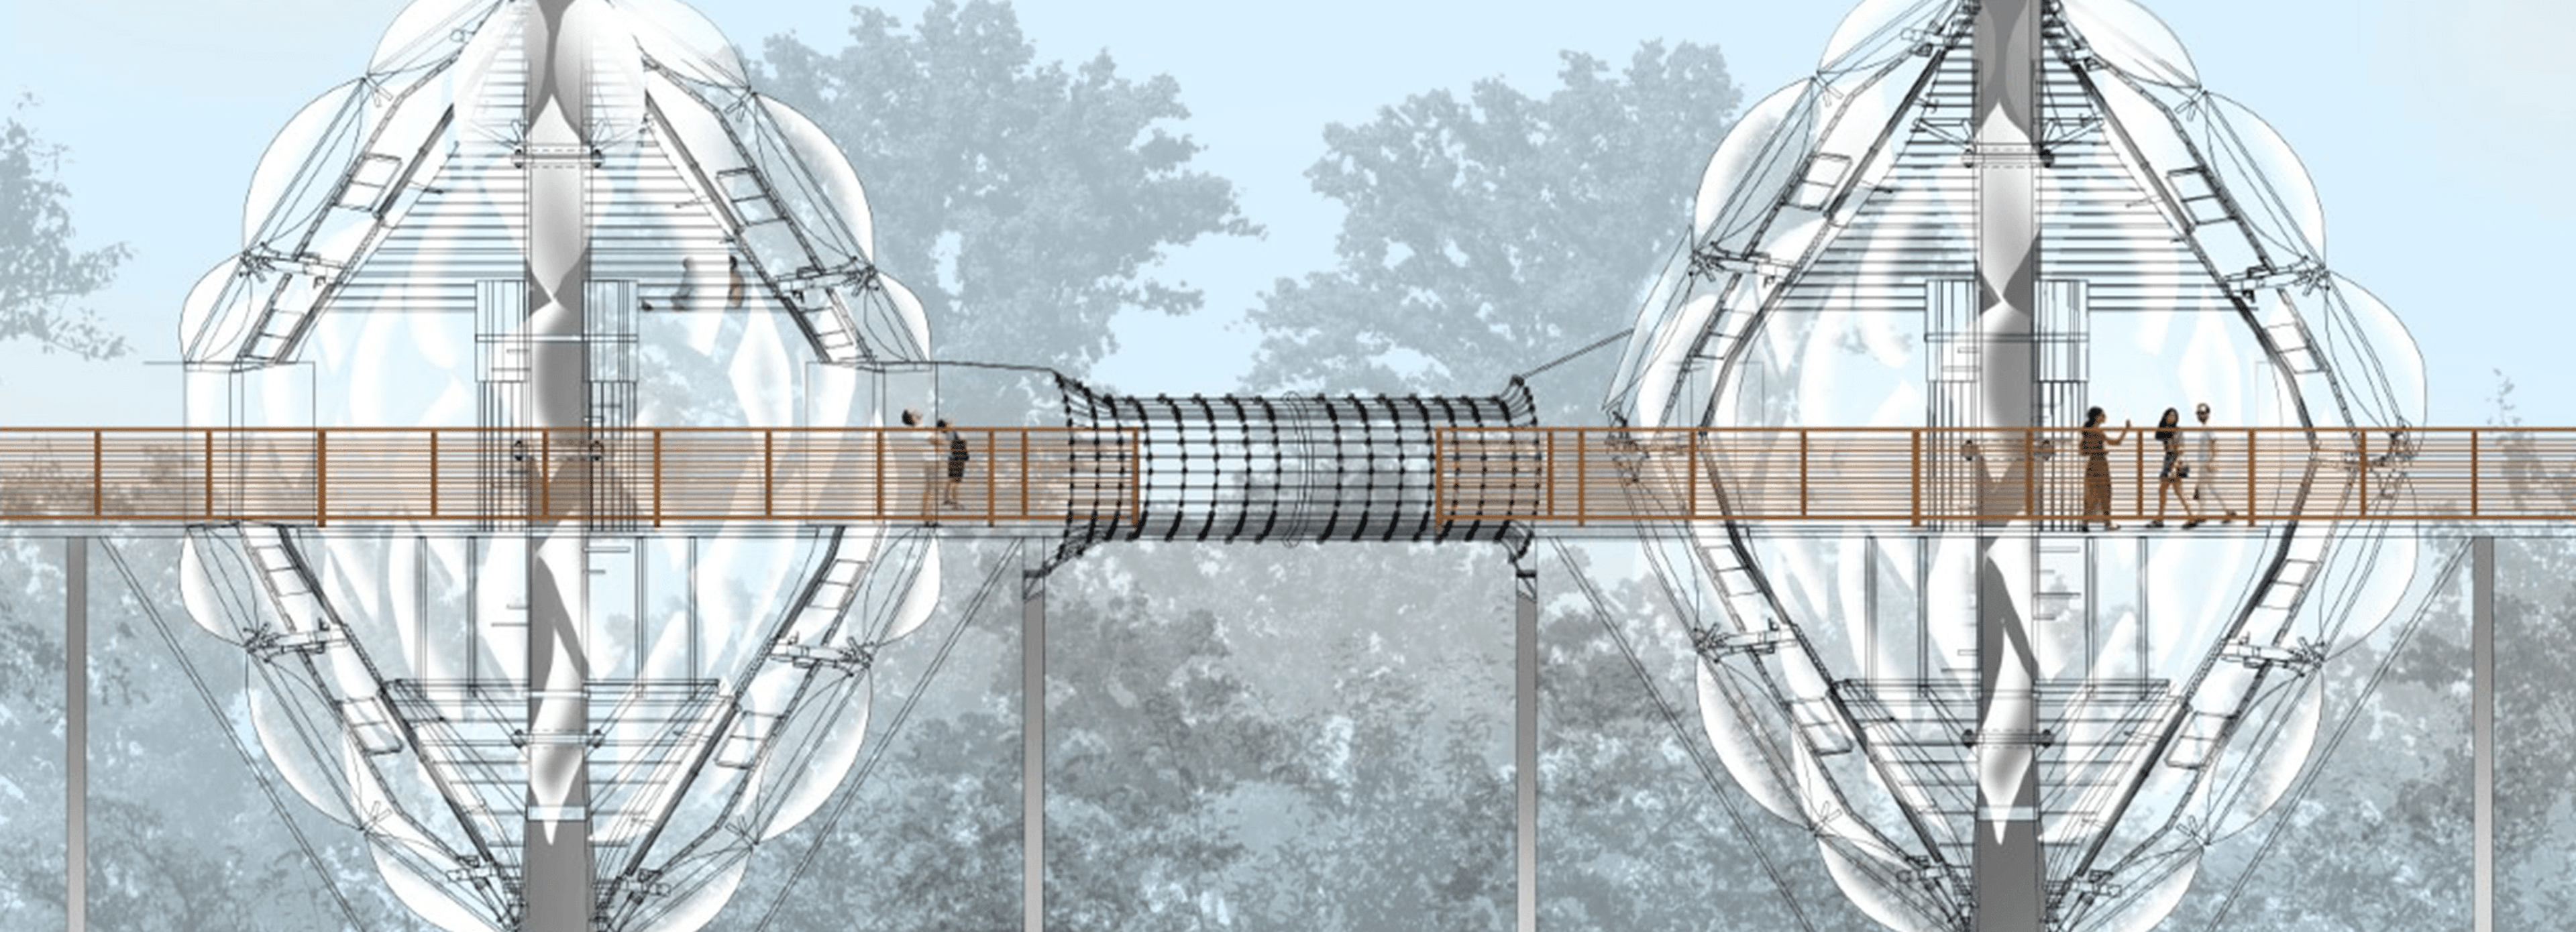 Un concepto arquitectónico visionario de una pasarela suspendida que conecta estructuras esféricas de vidrio en un entorno forestal.